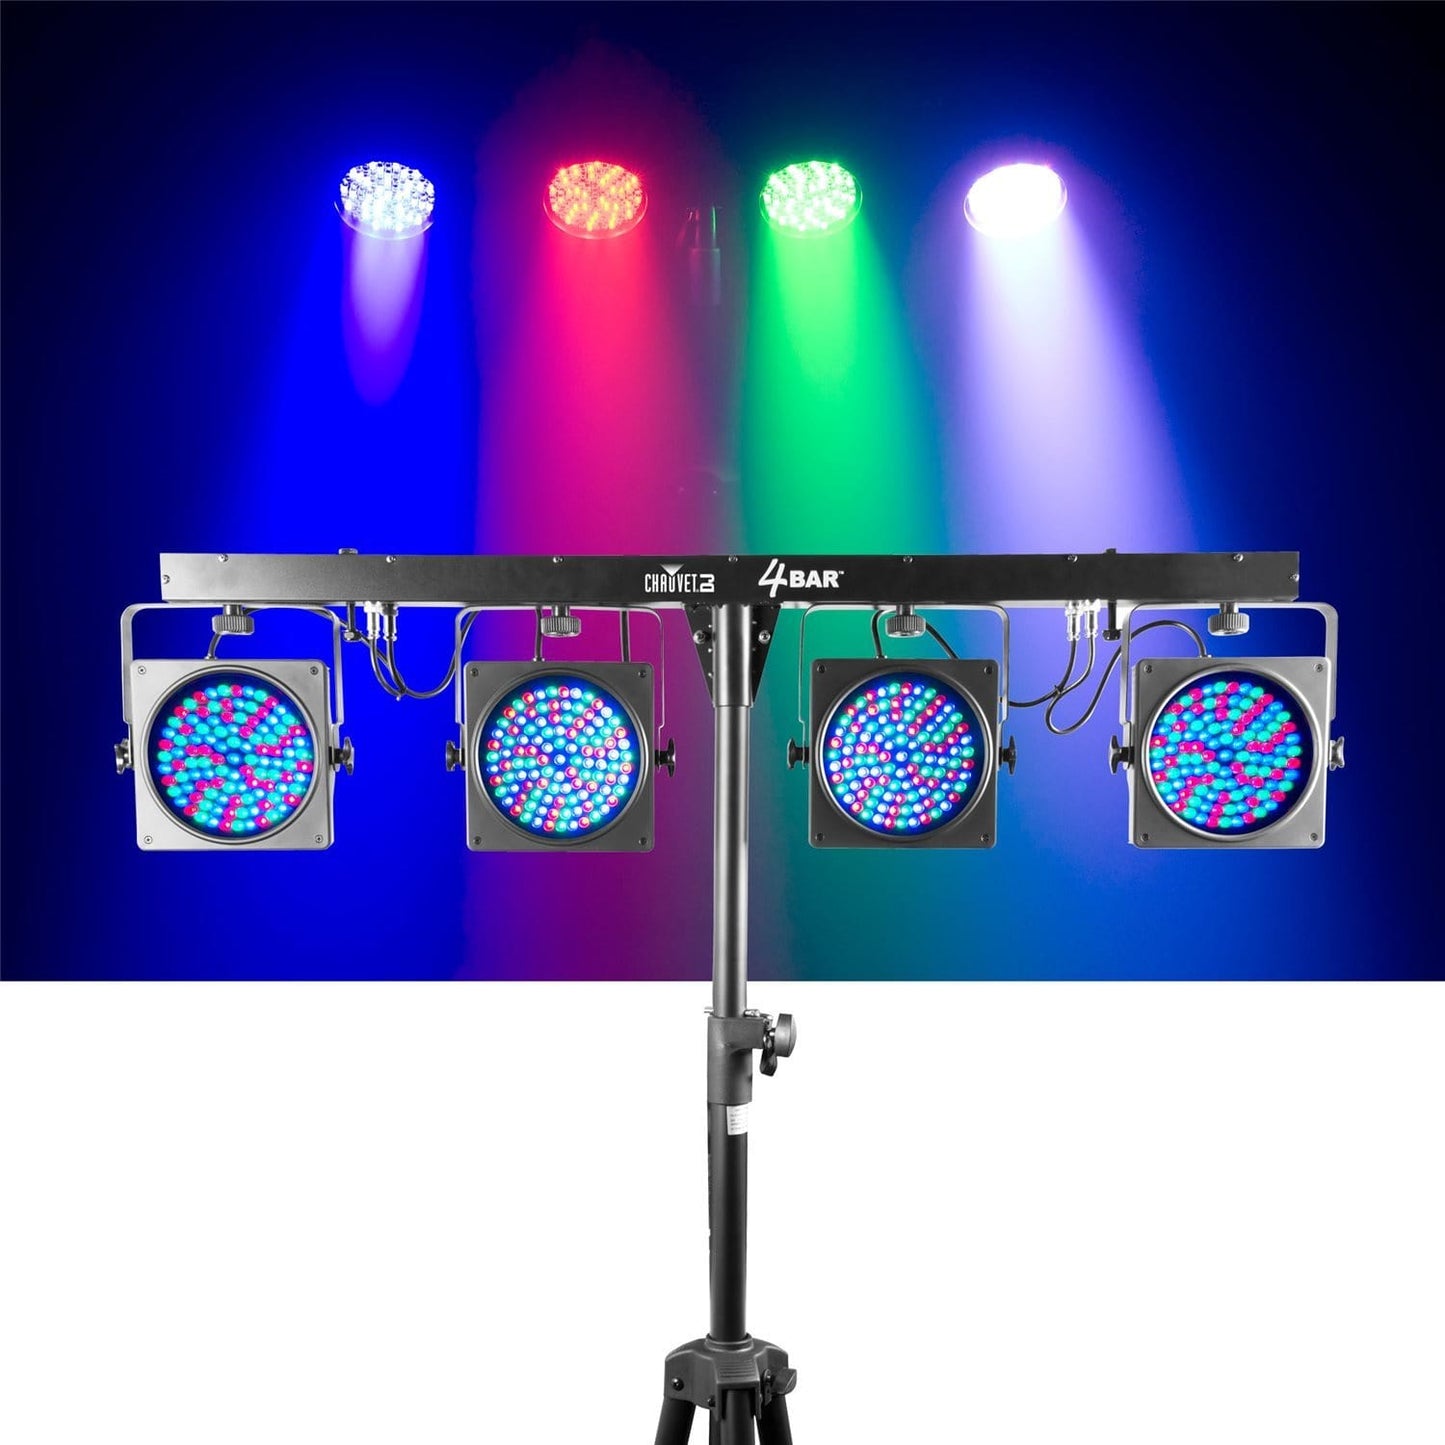 Chauvet 4BAR 4x LED Par Wash Light Complete System - ProSound and Stage Lighting